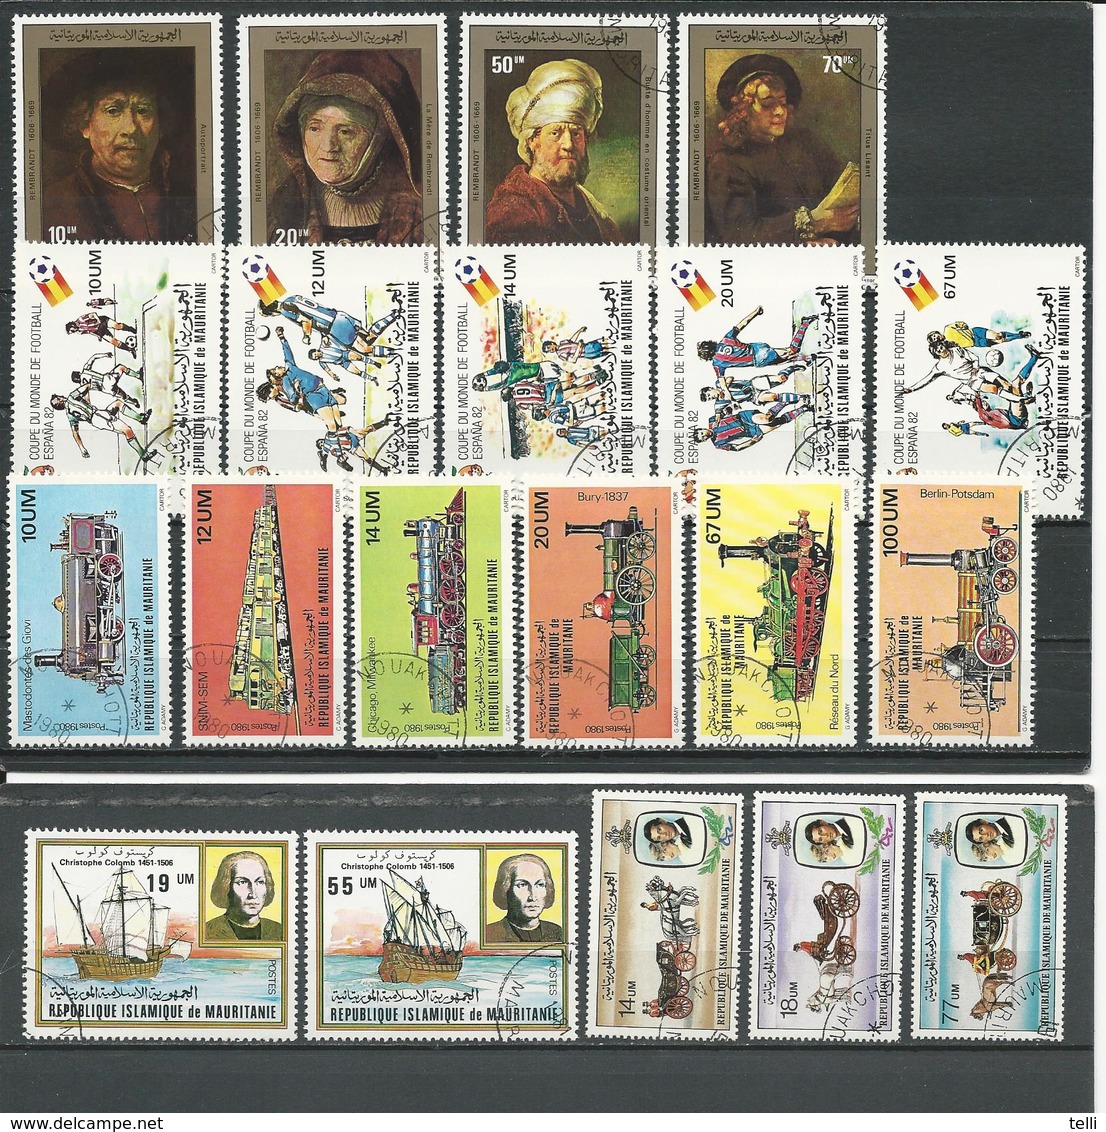 MAURITANIE 5 Séries Complètes Voir Détail (20) O Cote 9,50$ 1980-81 - Mauritanie (1960-...)